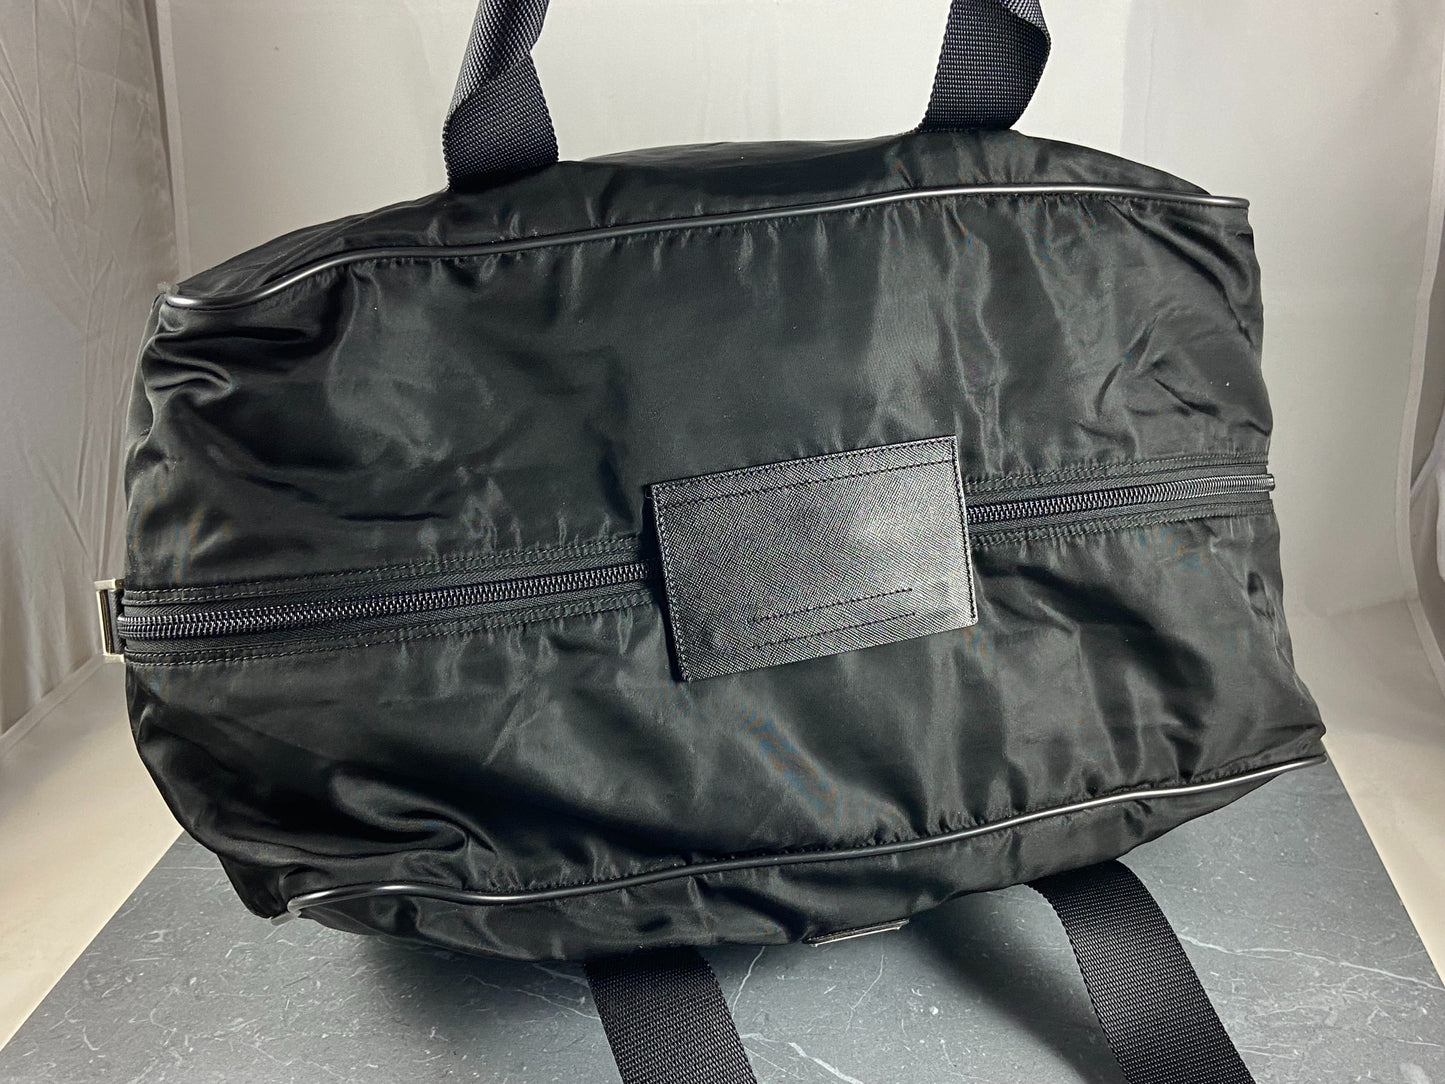 Prada Tessuto Nylon Travel Duffle Bag Black